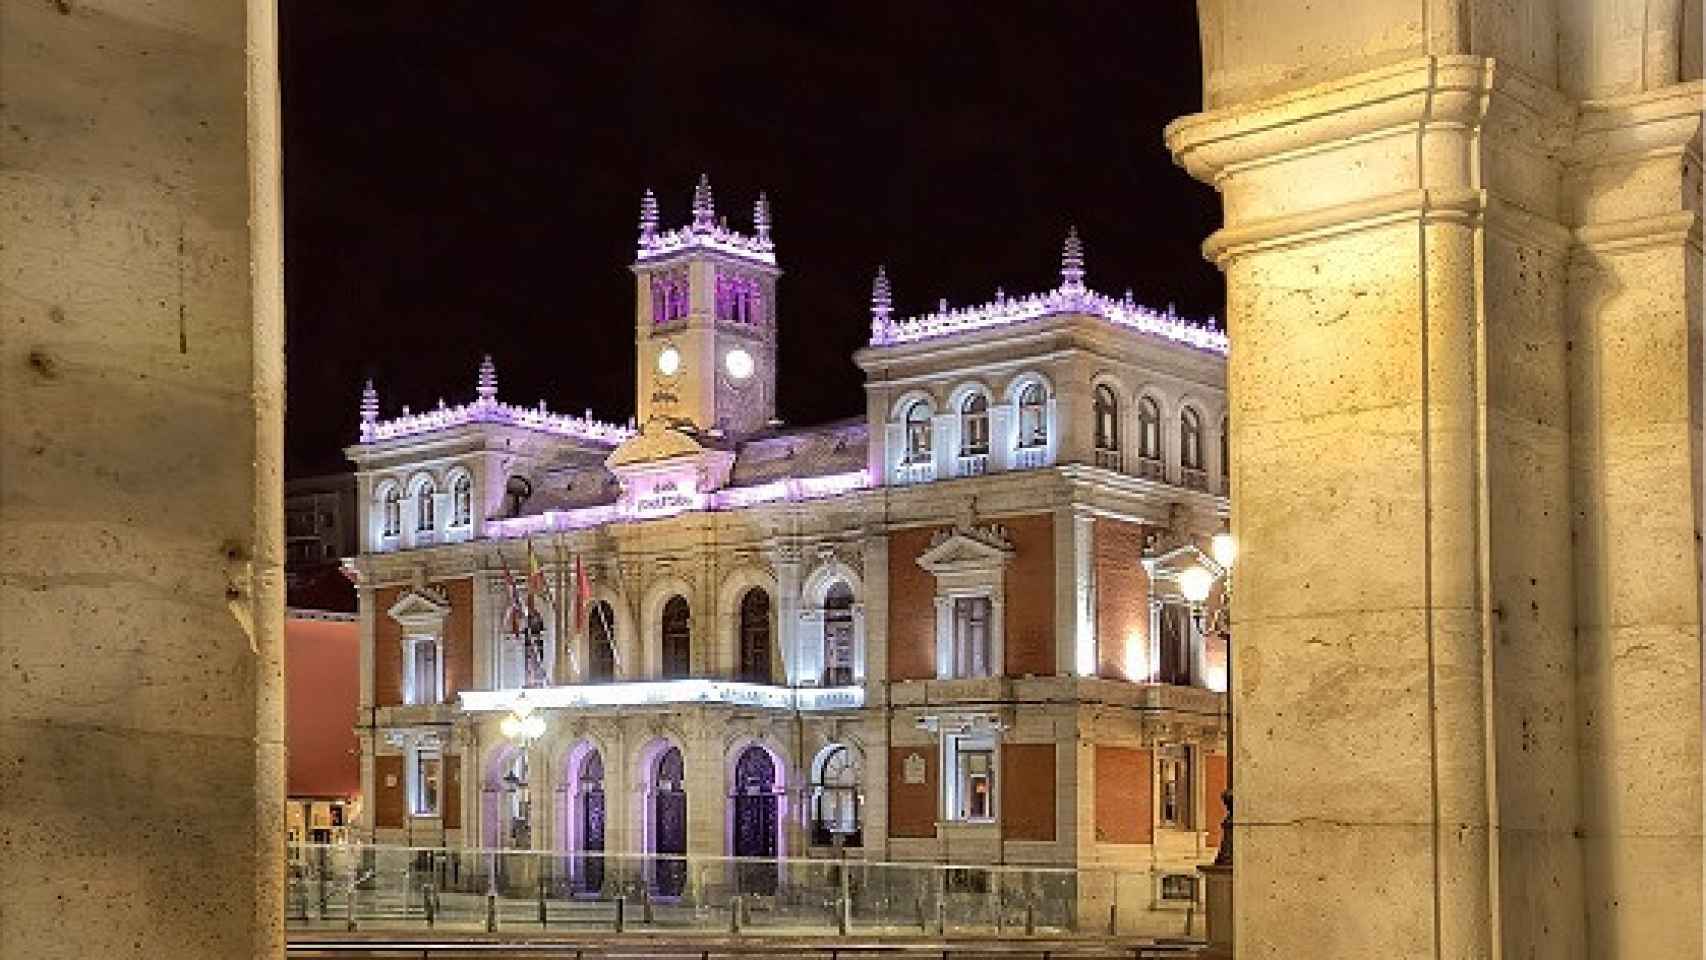 La Plaza Mayor de Valladolid